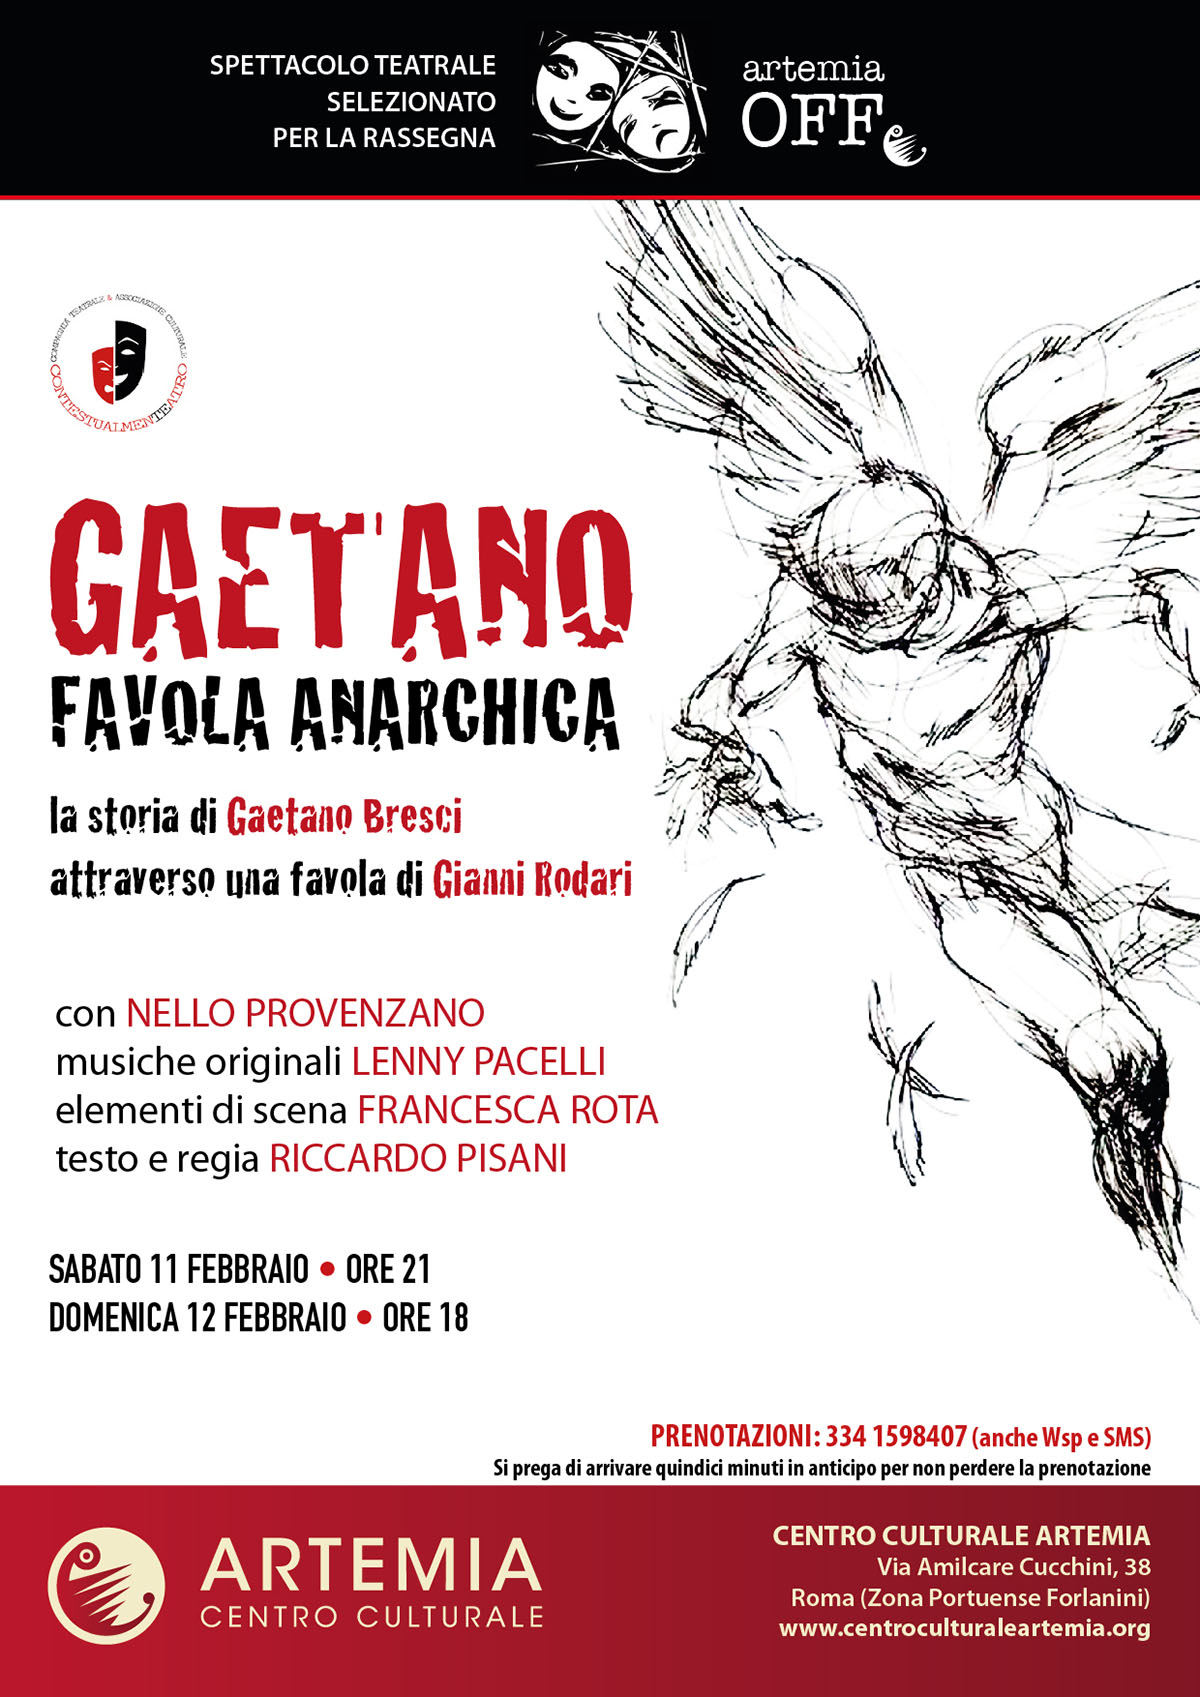 Gaetano, Favola Anarchica – Rassegna “Artemia OFF”